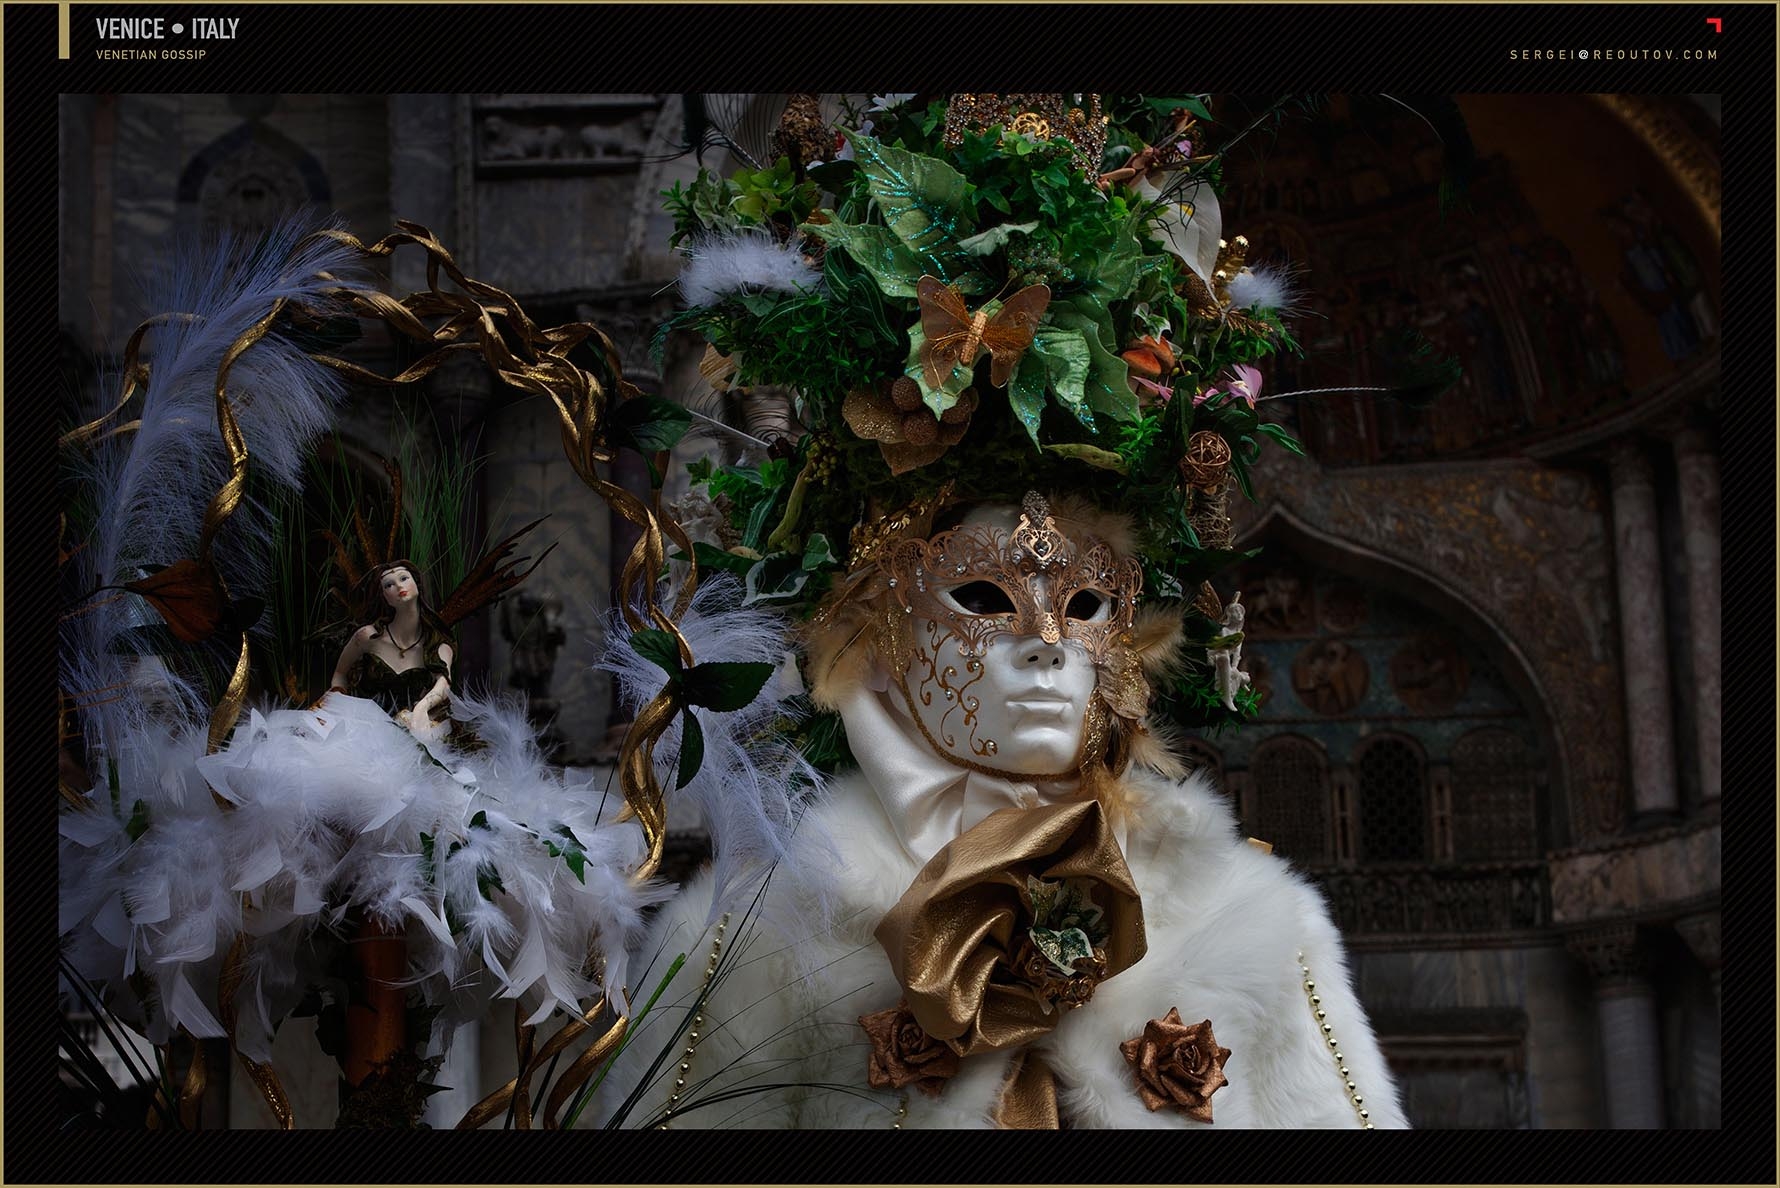 Venetian masks, carnival